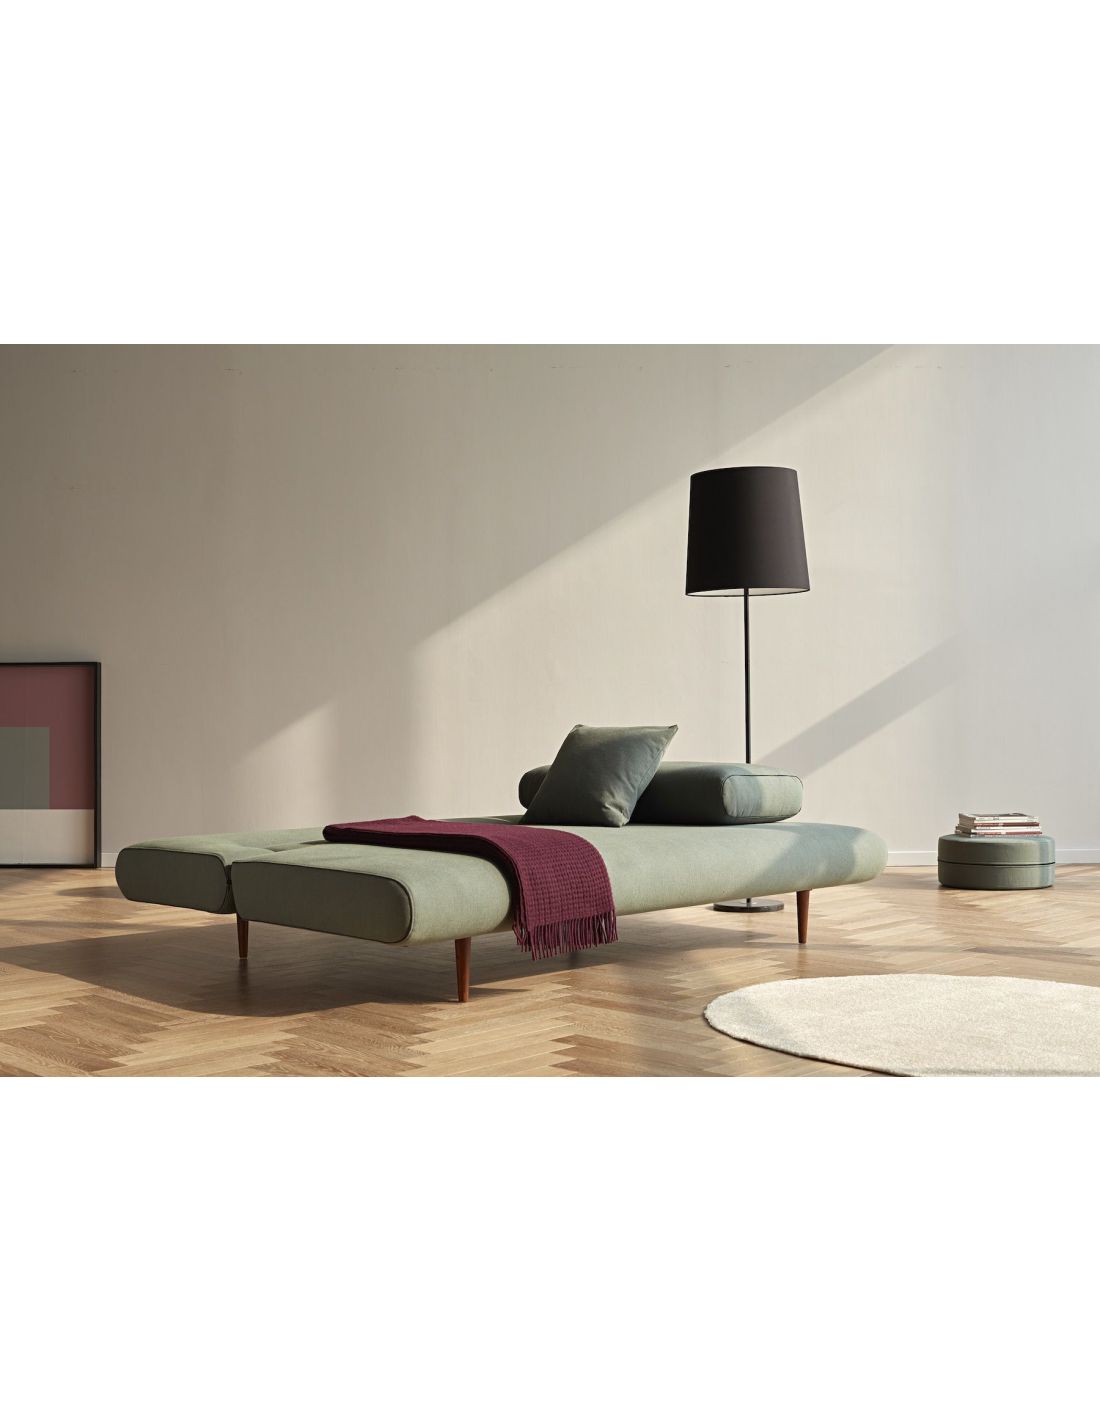 Divano letto design scandinavo 140x200 cm unfurl lounger for Divano letto design